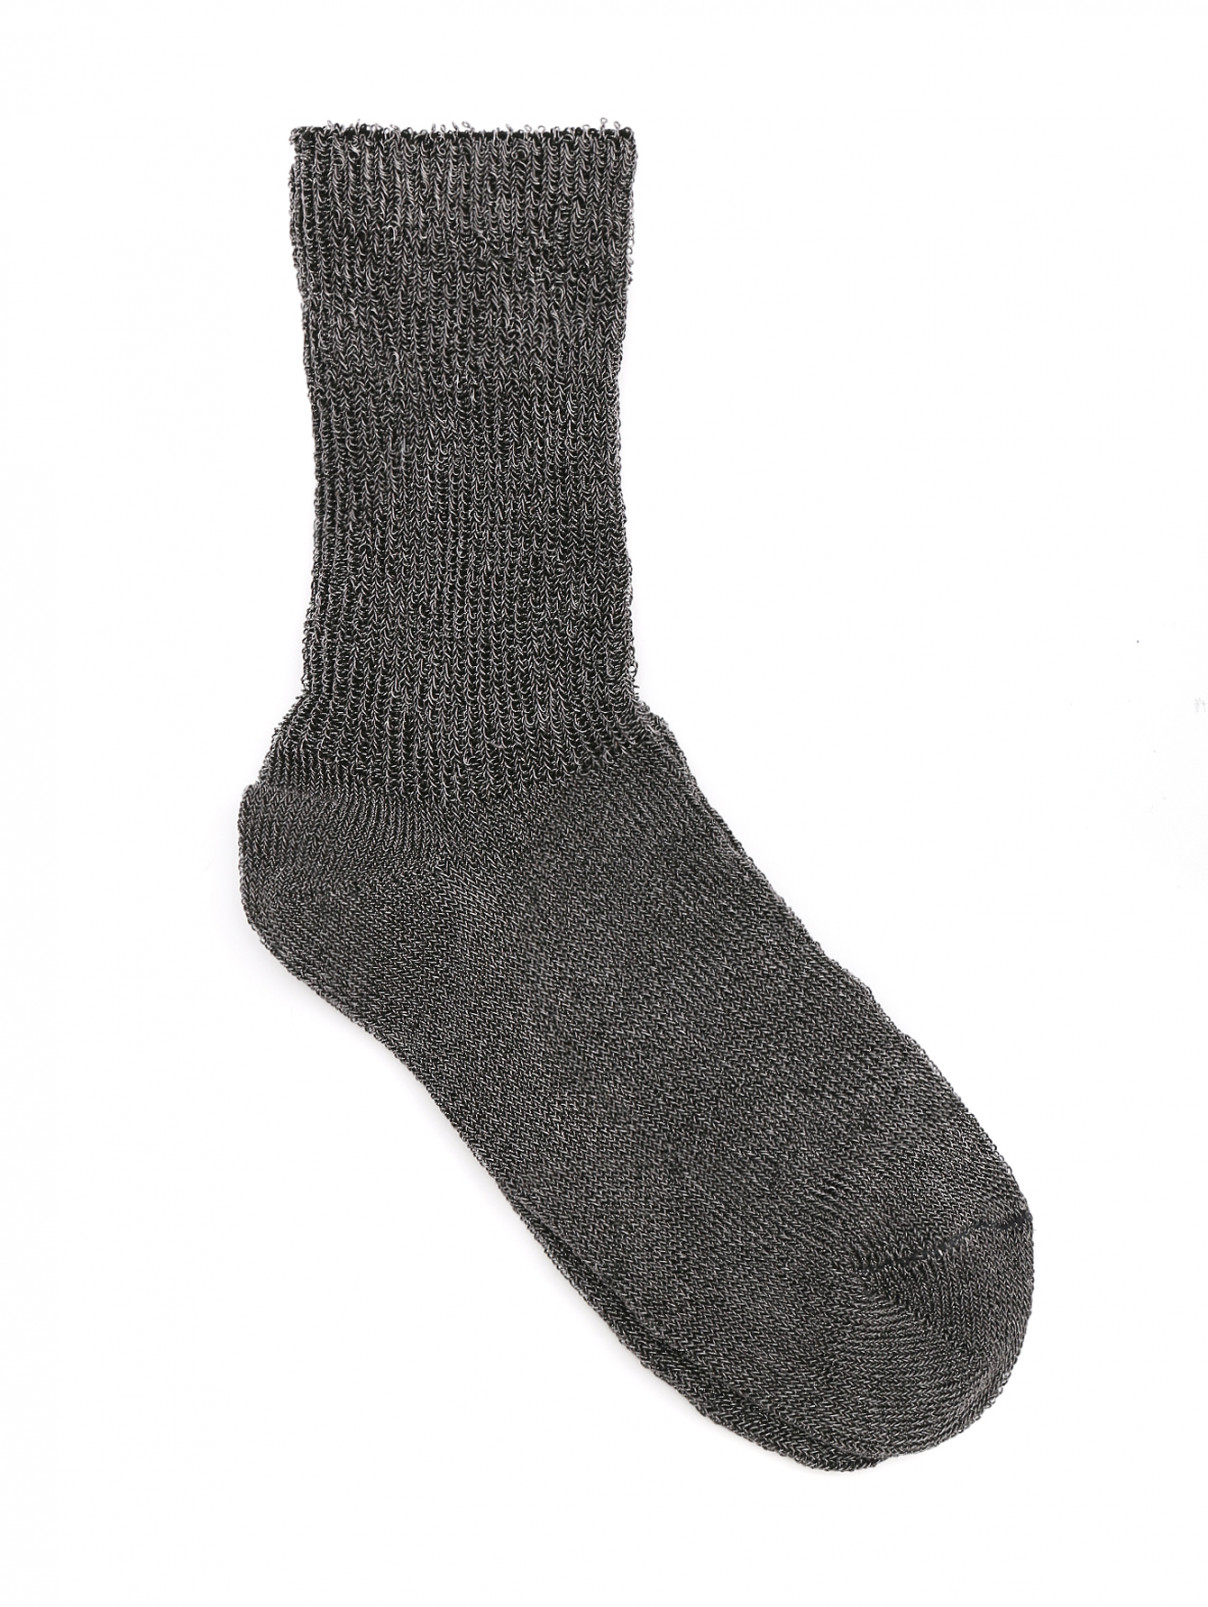 Носки с контрастной вставкой ALTO MILANO  –  Общий вид  – Цвет:  Черный